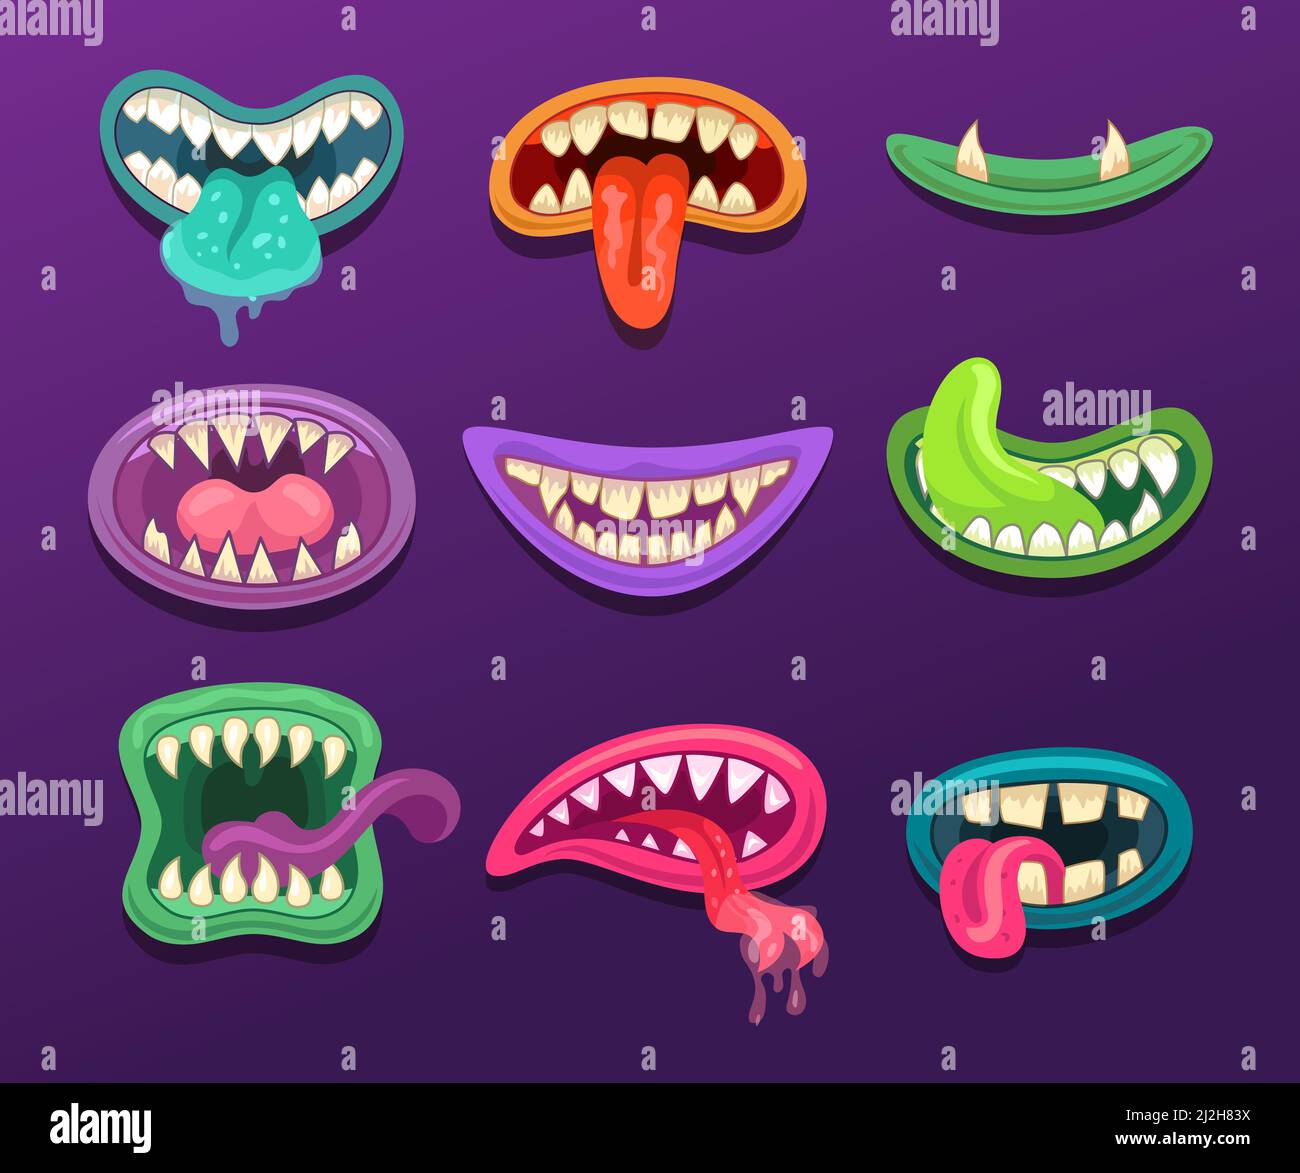 Les illustrations Monster Mouths sont de style dessin animé. Mignons bouches de créature avec la langue et les dents et la salive goutte à goutte. Halloween caricature monstre colec Illustration de Vecteur